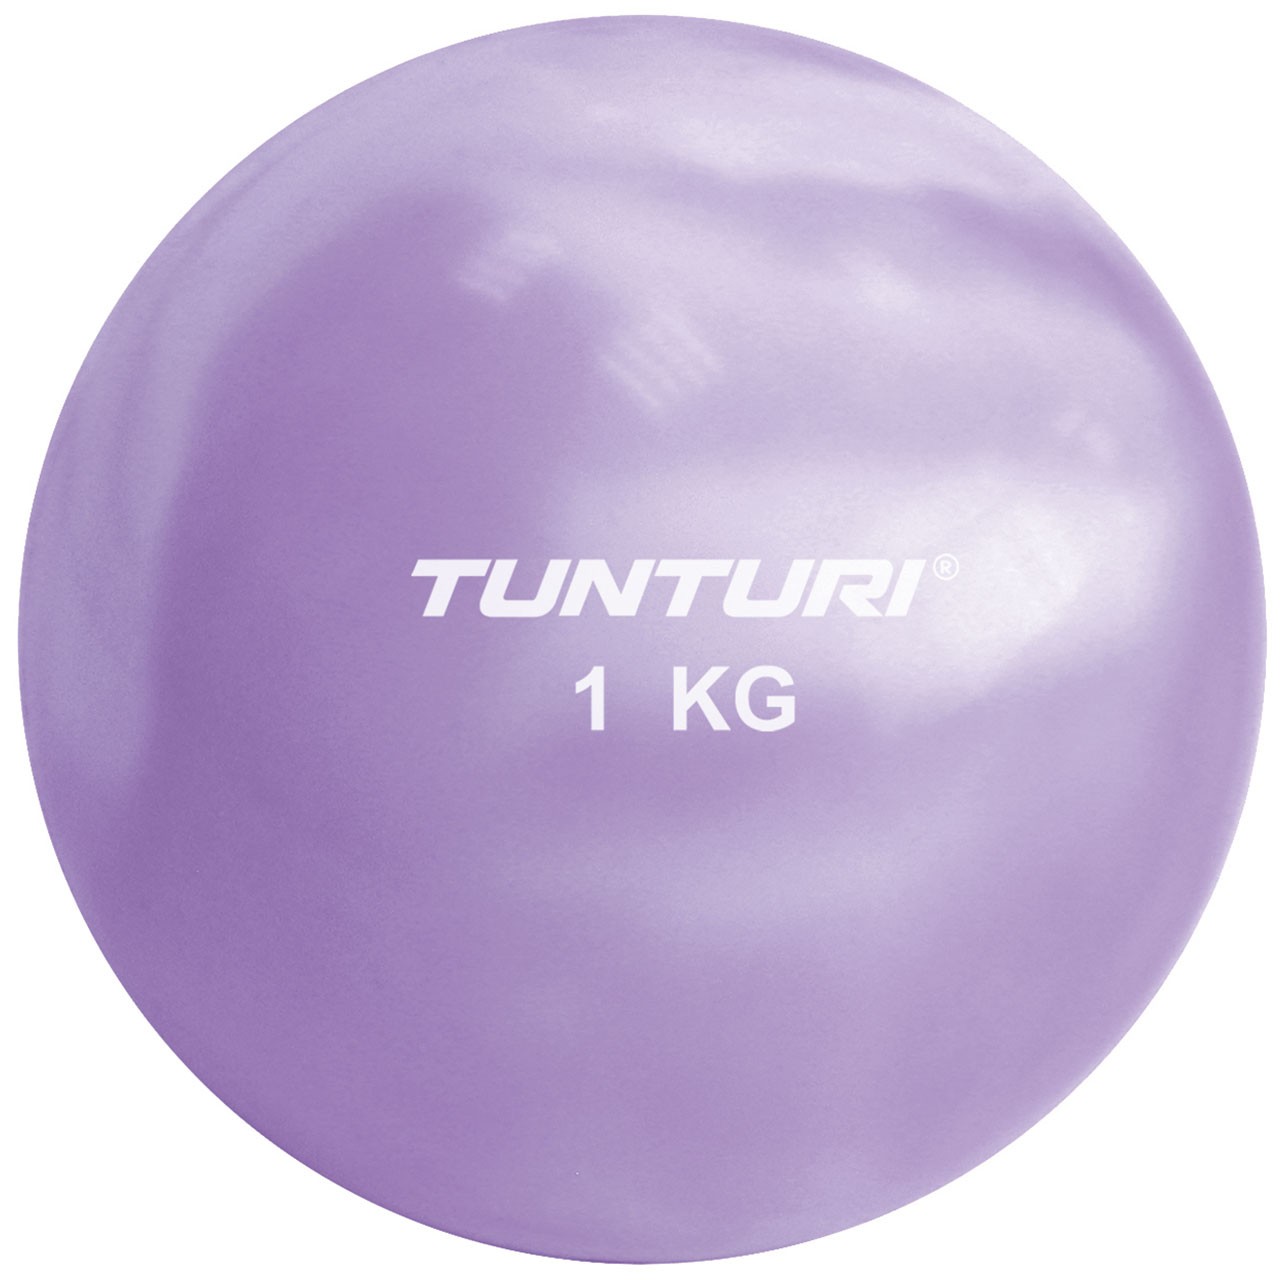 Tunturi Yoga and Pilates Toning Ball 1 kg 12 cm